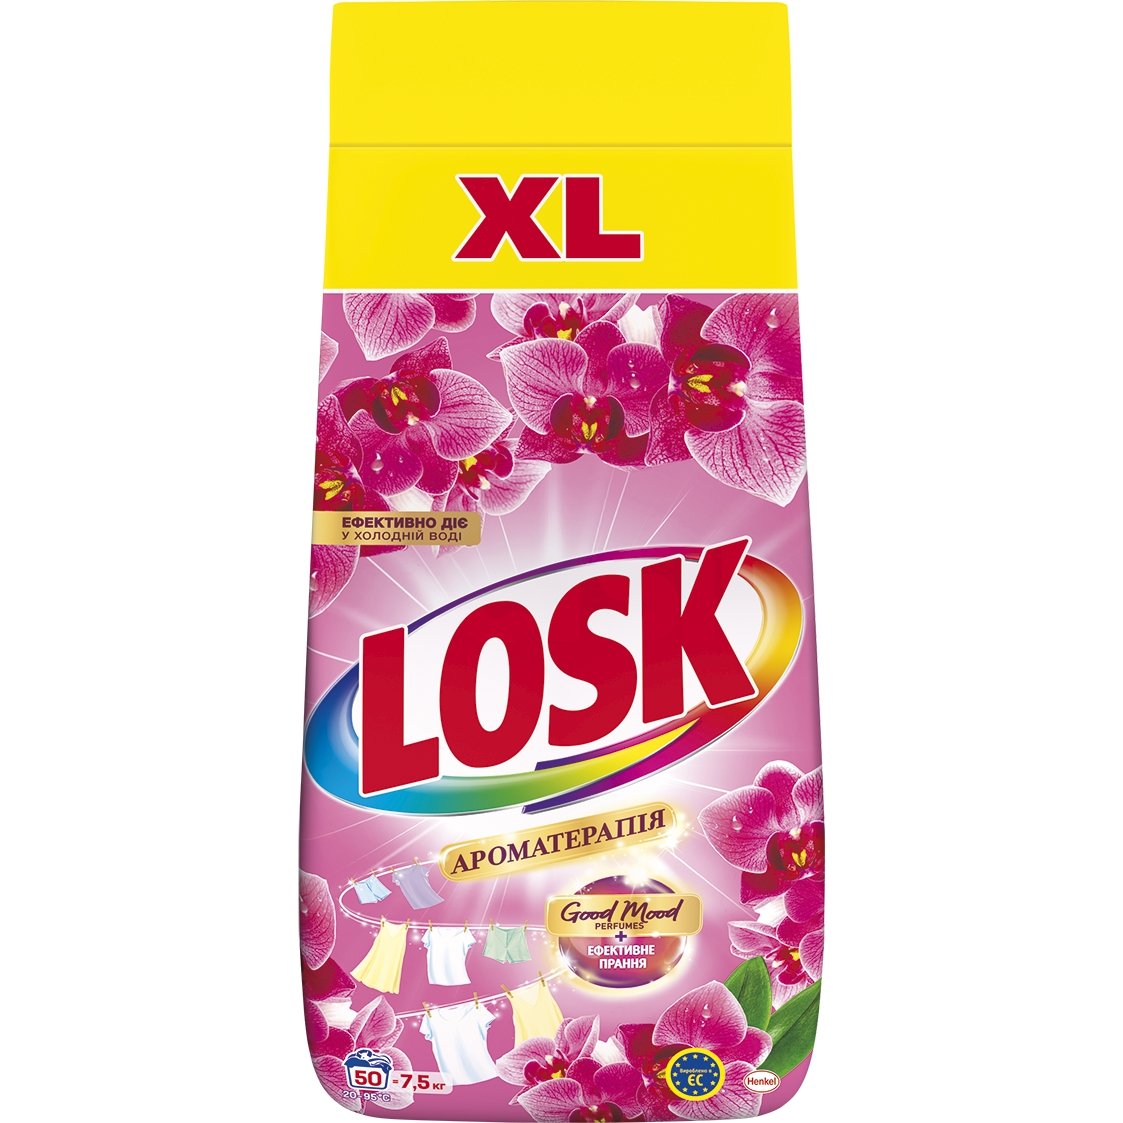 Стиральный порошок Losk Ароматерапия Эфирные масла и аромат Малазийского цветка 7.5 кг 50 циклов стирки - фото 1